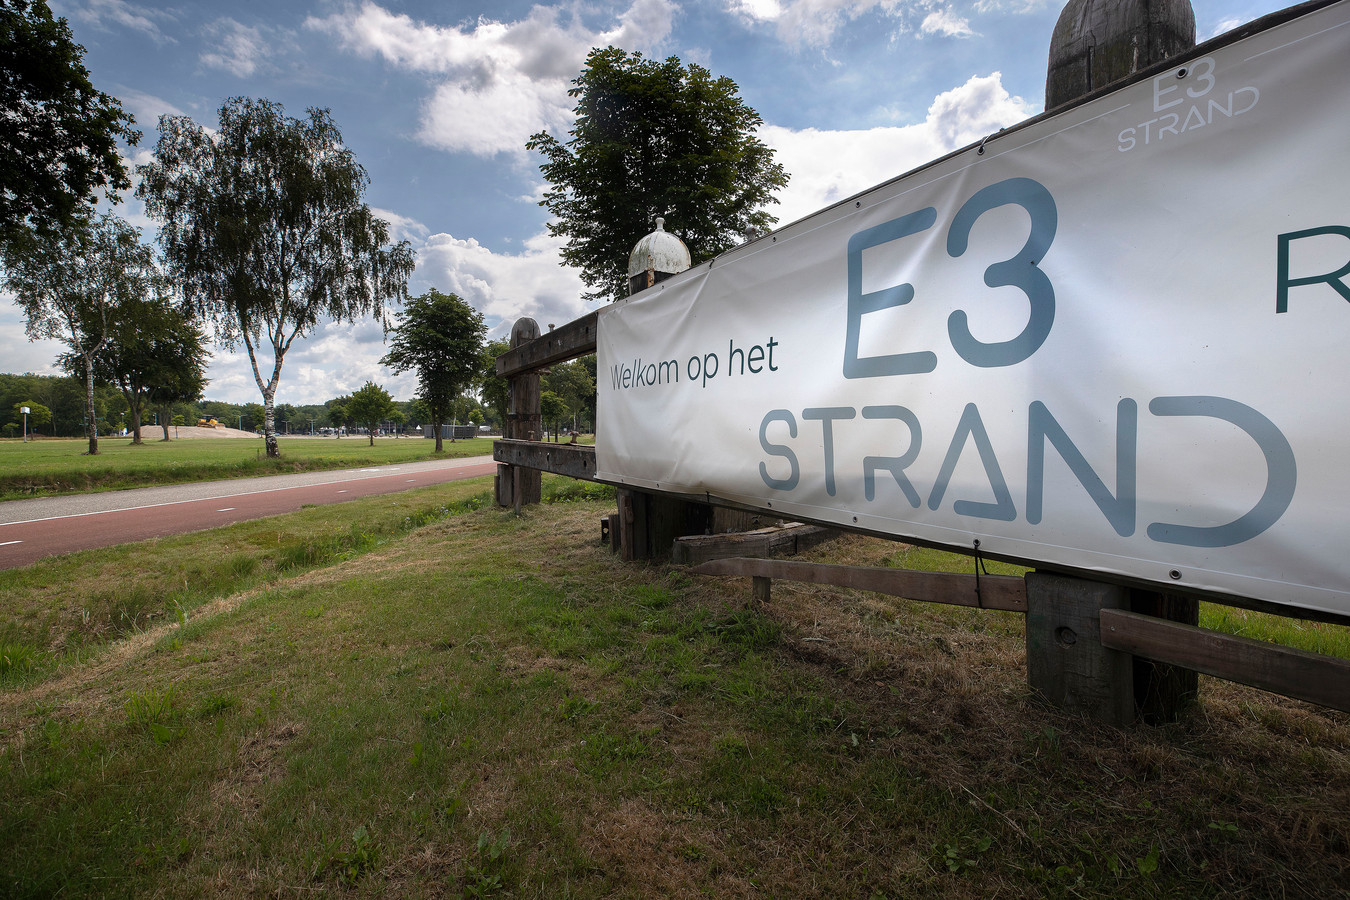 De recreatieplas in Eersel heet geen Landgoed Duynenwater meer, maar heeft de naam E3 Strand terug.